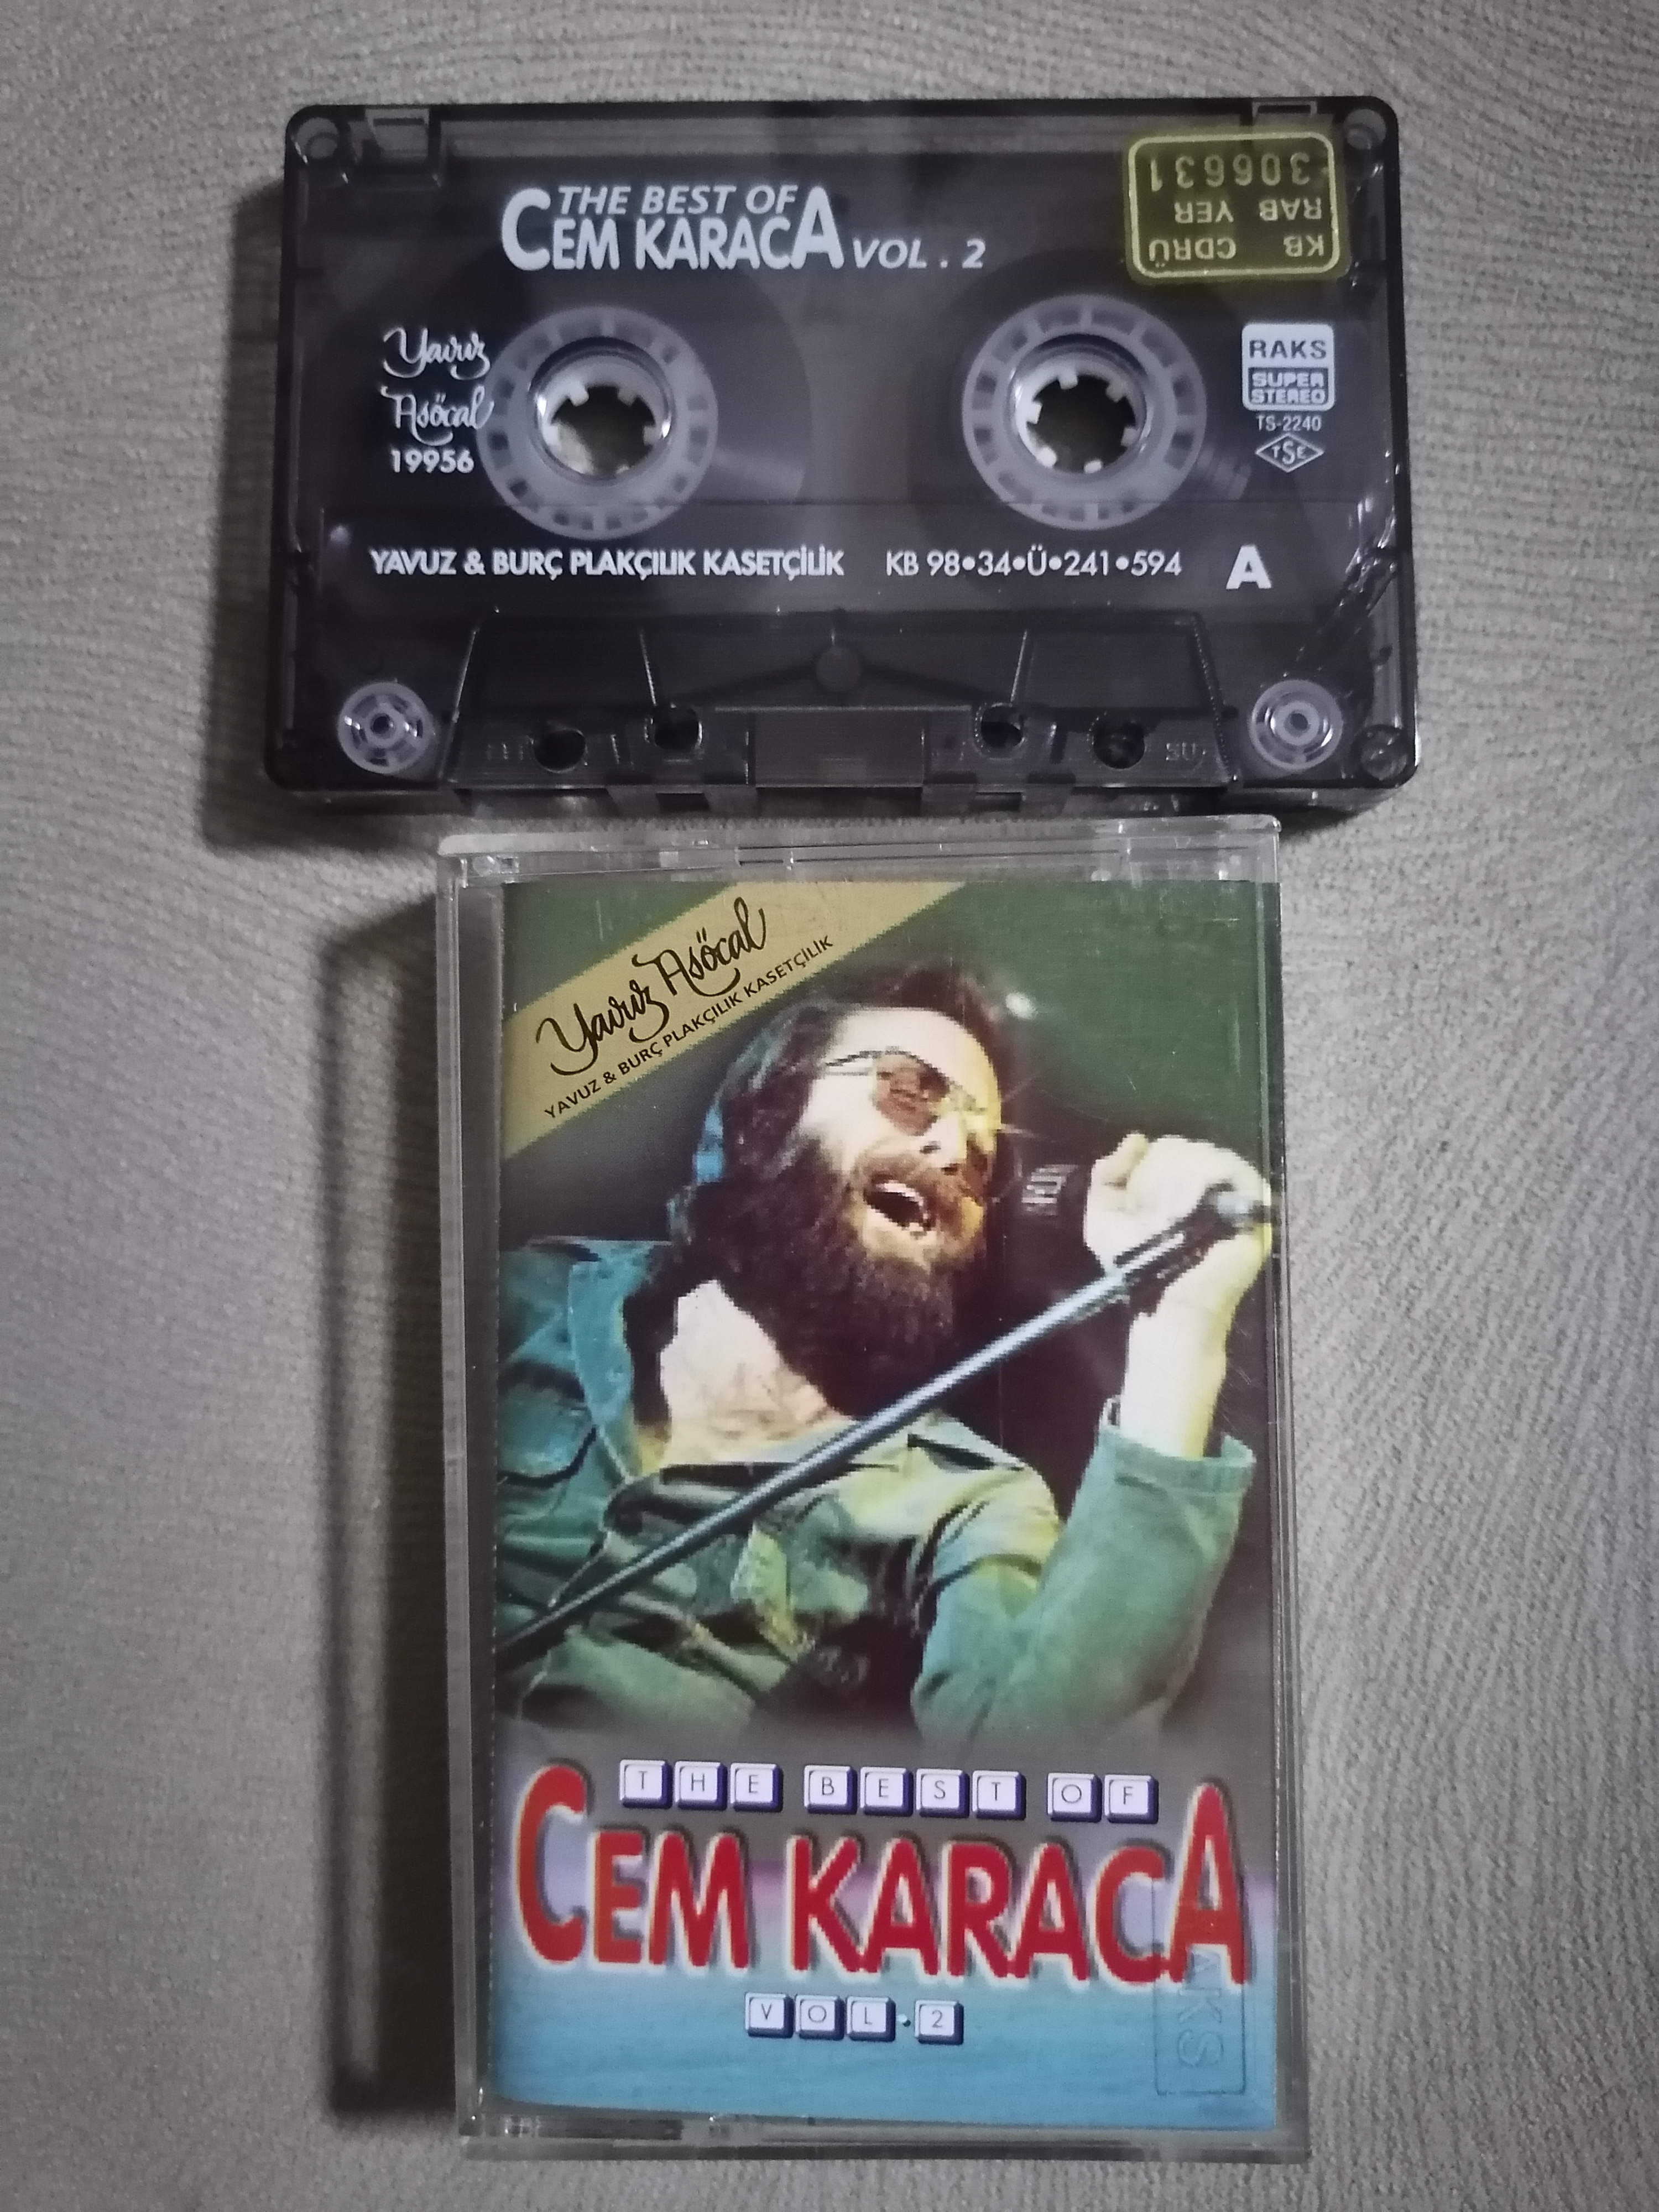 CEM KARACA - The Best of CEM KARACA Volume 2 - 1998 Türkiye Basım Kaset Albüm